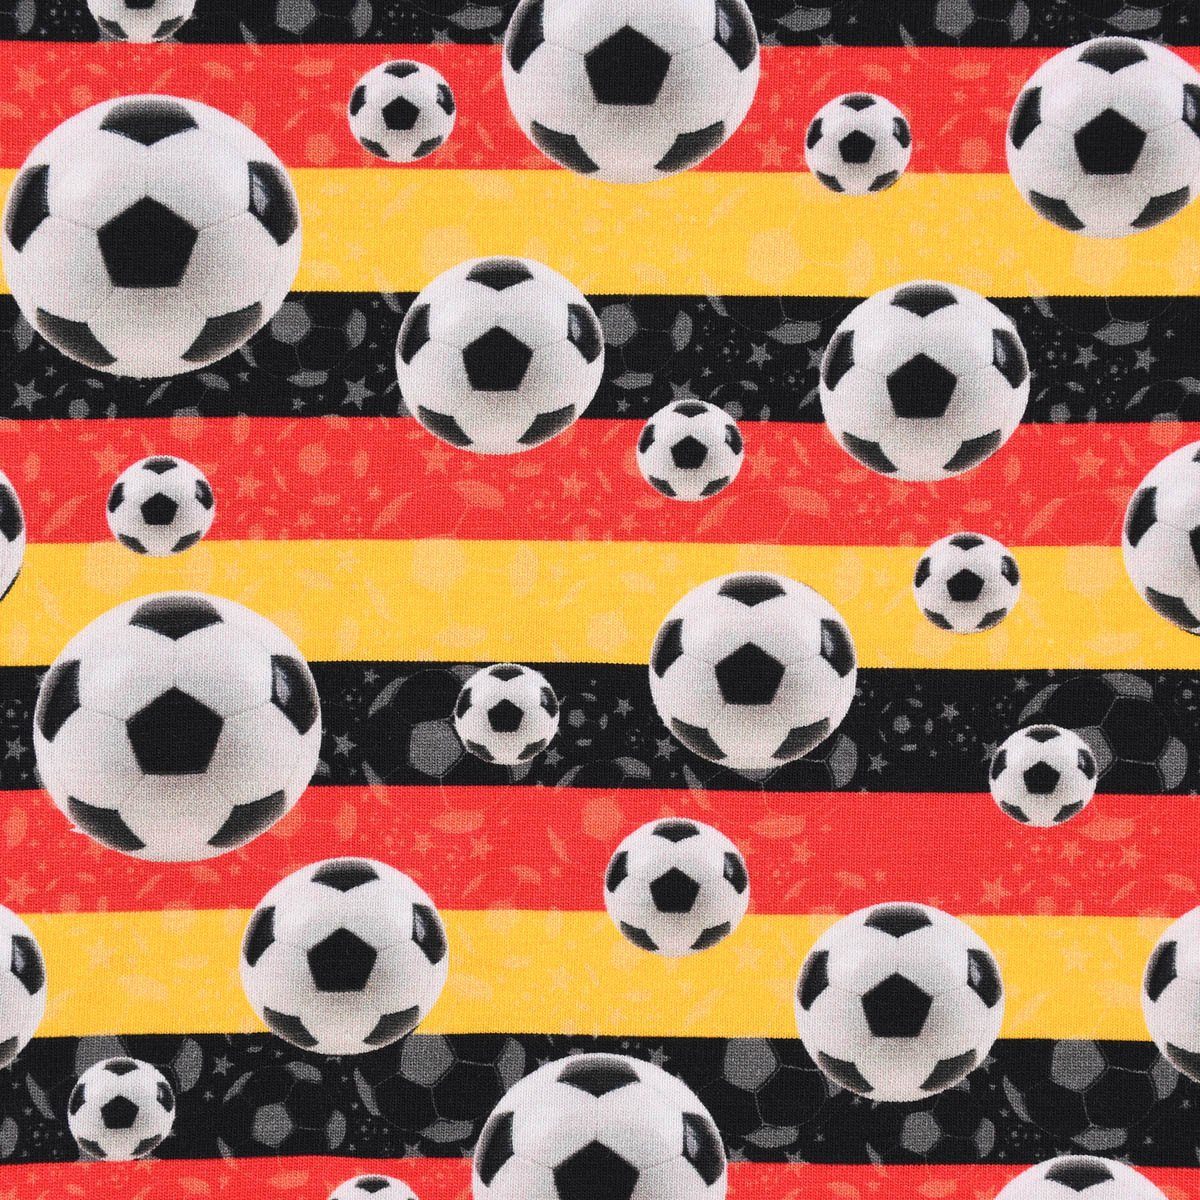 SCHÖNER LEBEN. Stoff Baumwolljersey Digitaldruck Fußball Streifen schwarz  rot gelb 1,45m, Digitaldruck